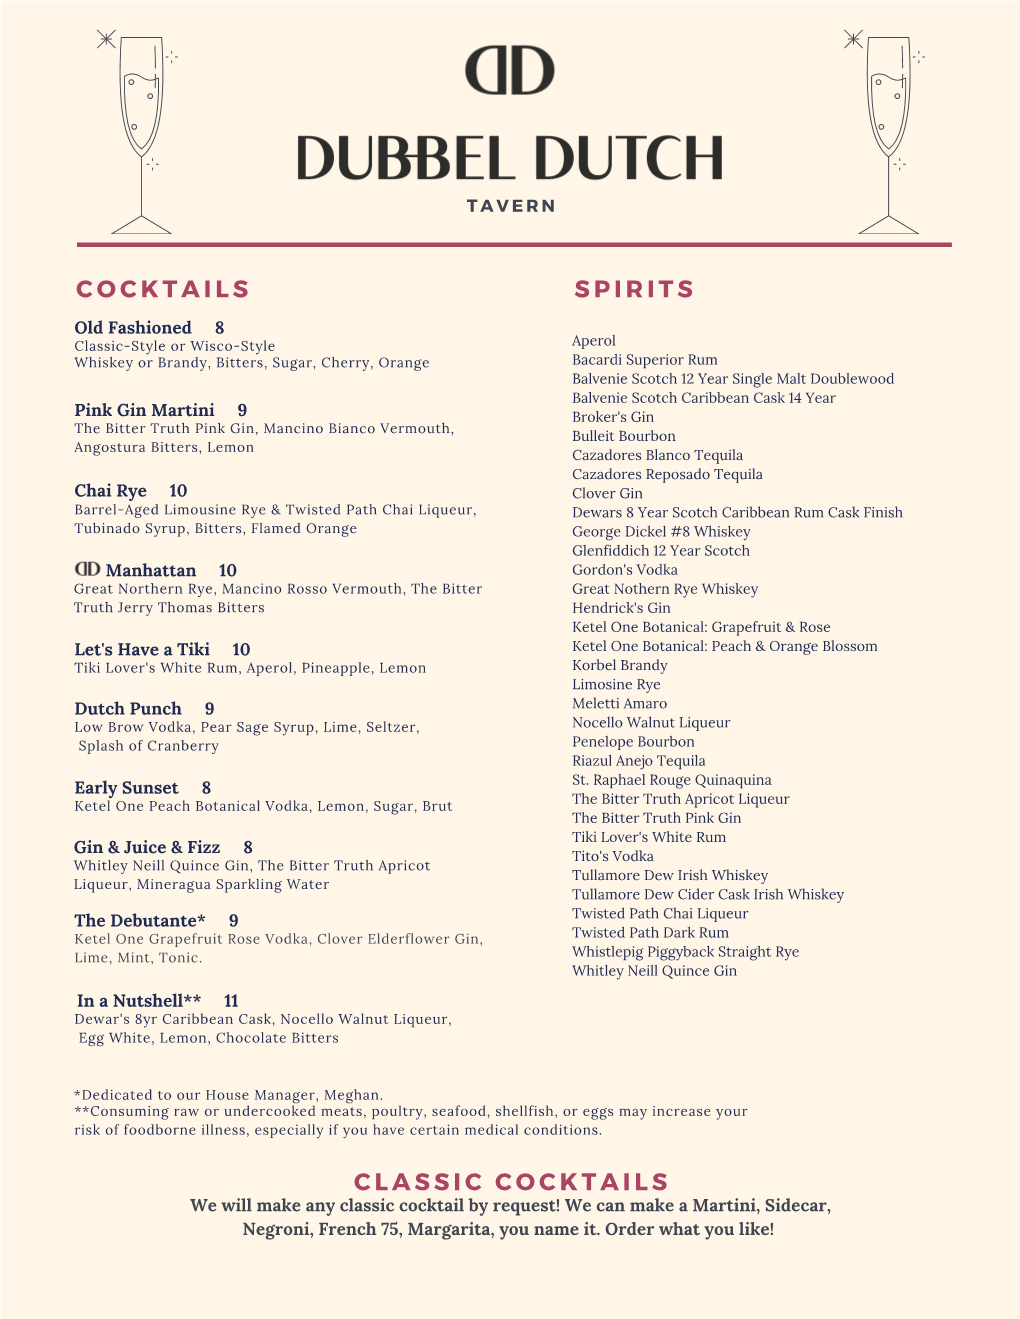 Dubbel Dutch Tavern Menu